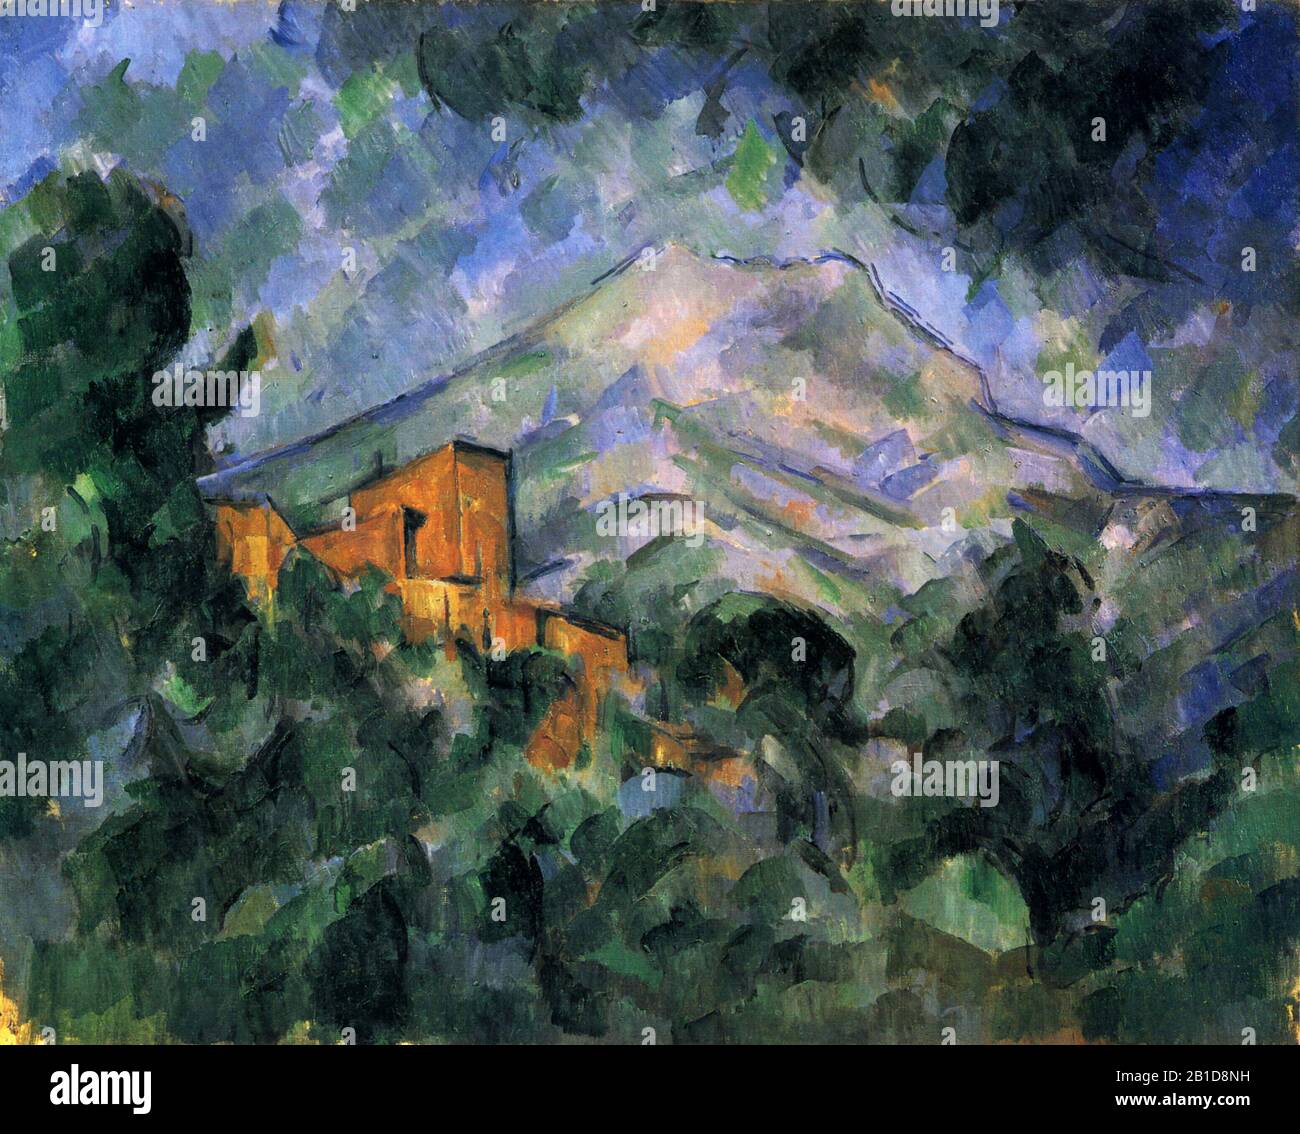 - Pittura 19th Secolo di Paul Cézanne - immagine Ad Altissima risoluzione e qualità Foto Stock